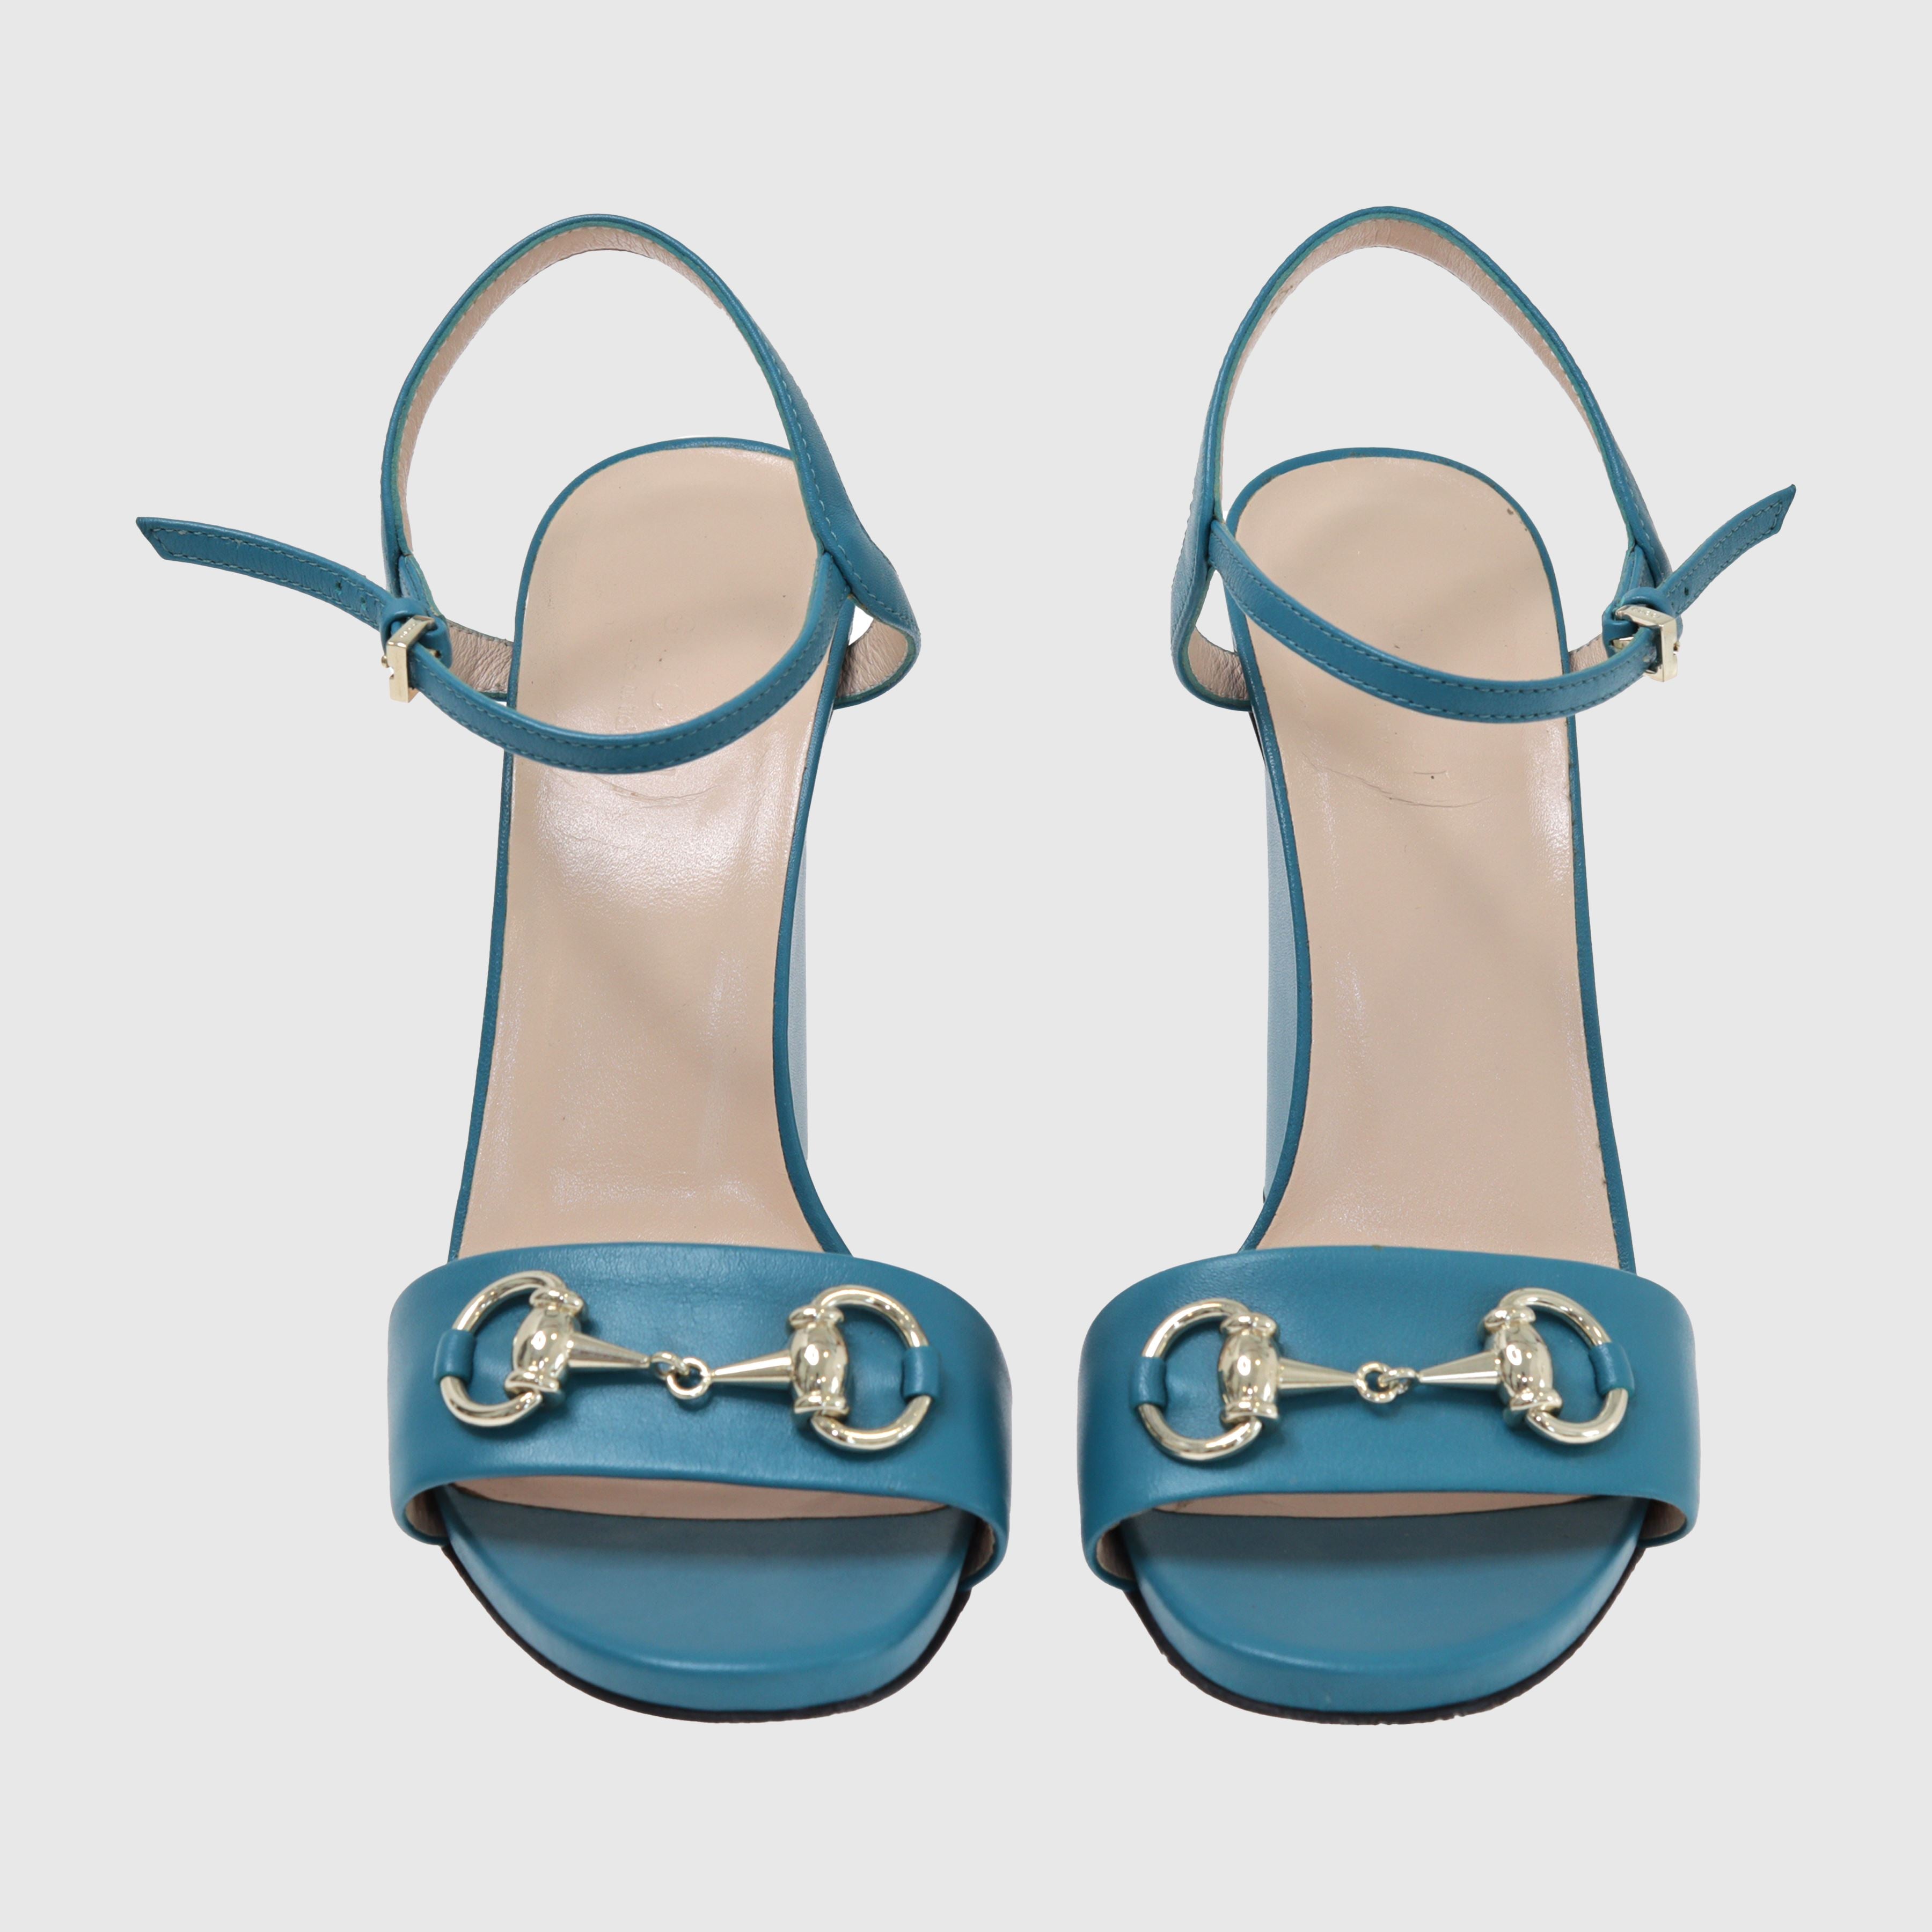 Teal Blue Horsebit Ankle Strap Sandal Shoes Gucci 